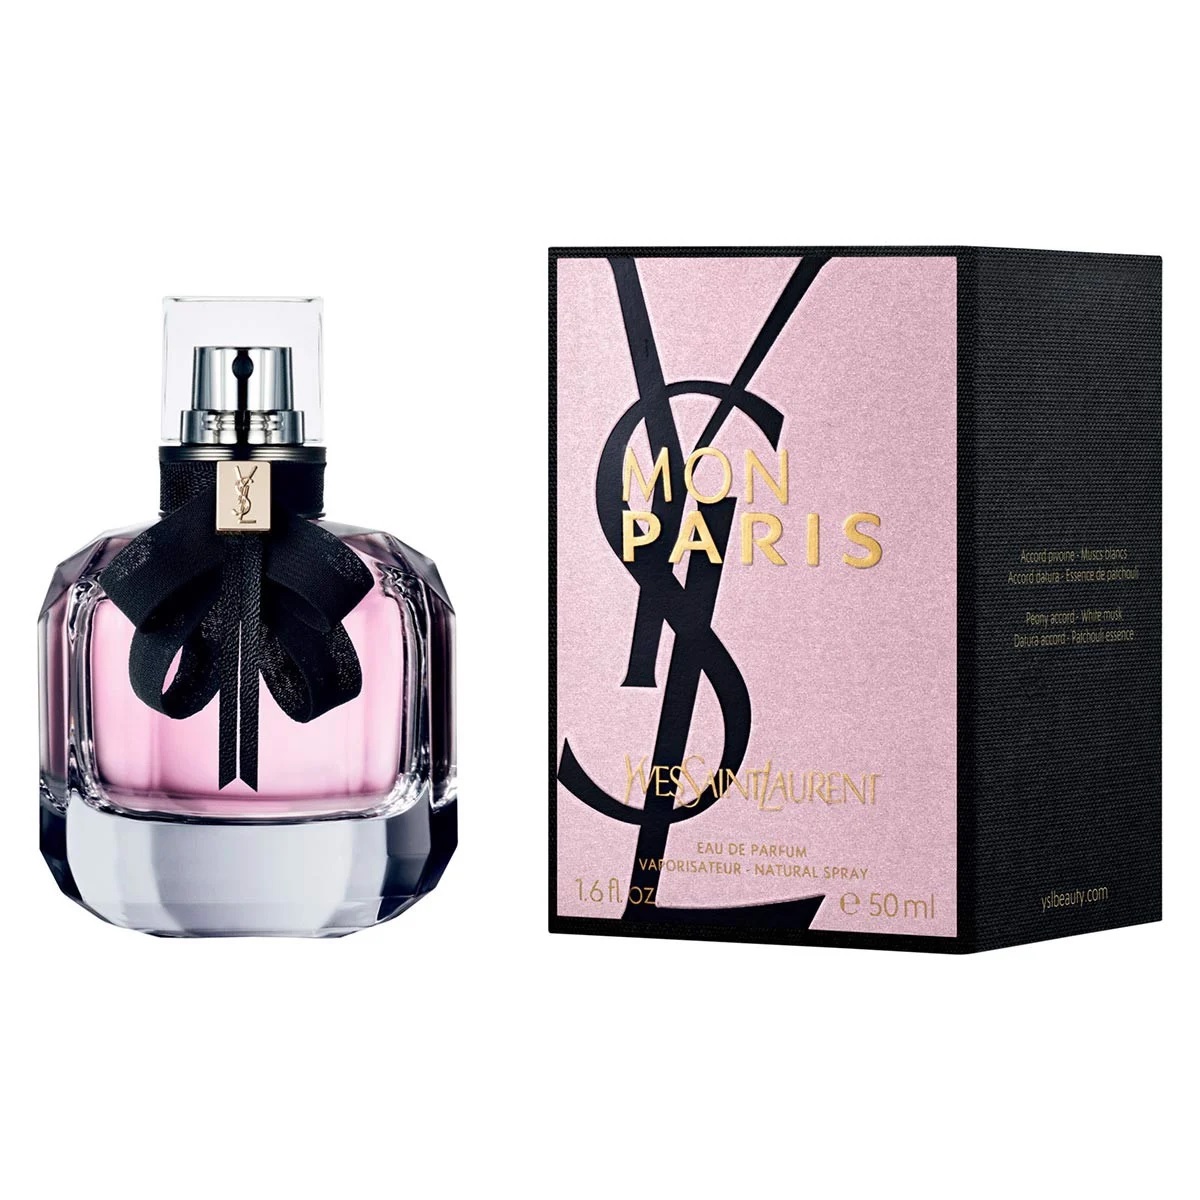 Thiết kế của Nước Hoa YSL Mon Paris 50ml Eau De Parfum